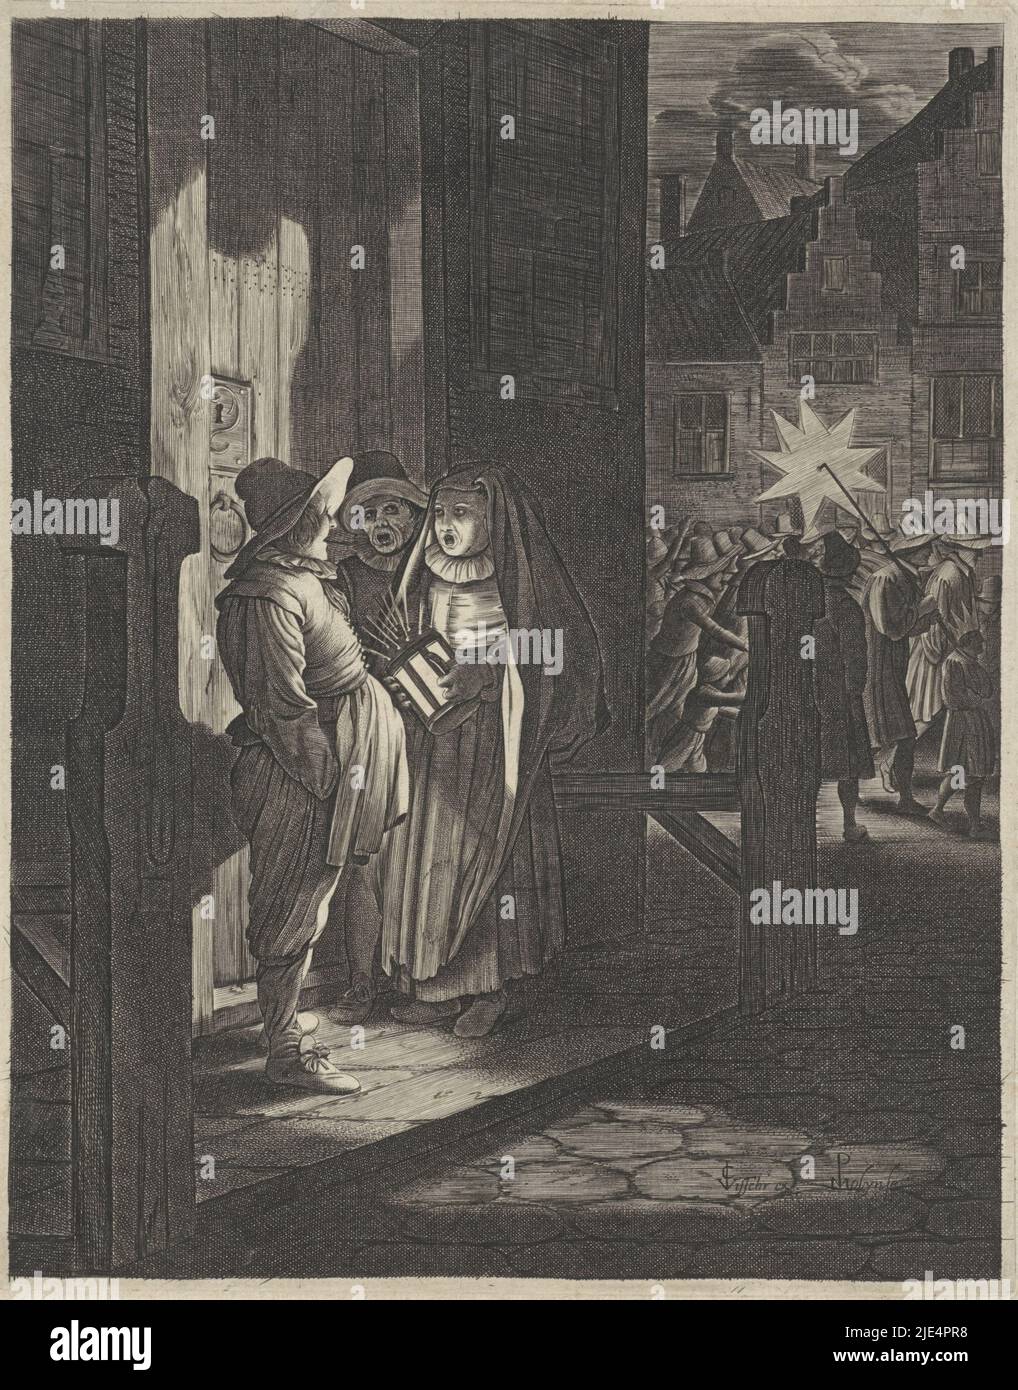 Drei Figuren mit einer Laterne an einer Tür, nachts. Dahinter eine Dorfstraße mit einer Prozession von Menschen, von denen einer mit einem dreifarbigen Stern über der Schulter., Epiphanie, Druckerei: Jan van de Velde (II), (auf Objekt erwähnt), Pieter de Molijn, (auf Objekt erwähnt), Verleger: Claes Jansz. Visscher (II), (auf Objekt erwähnt), Amsterdam, 1603 - 1652, Papier, Gravur, H 210 mm × B 167 mm Stockfoto